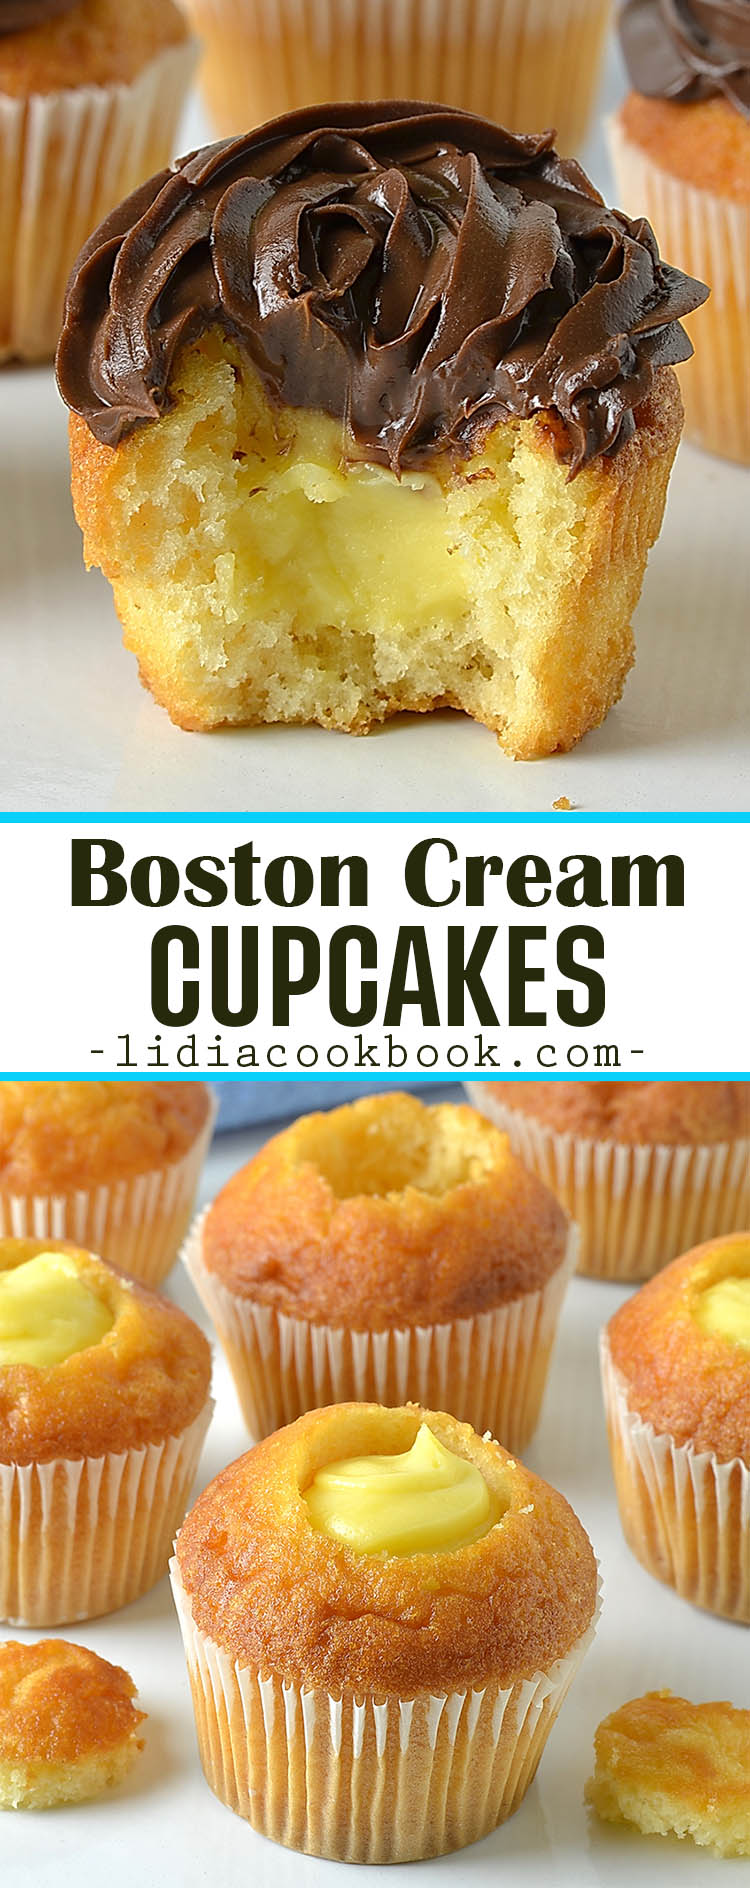 Boston Cream Cupcakes - Lidia's Cookbook